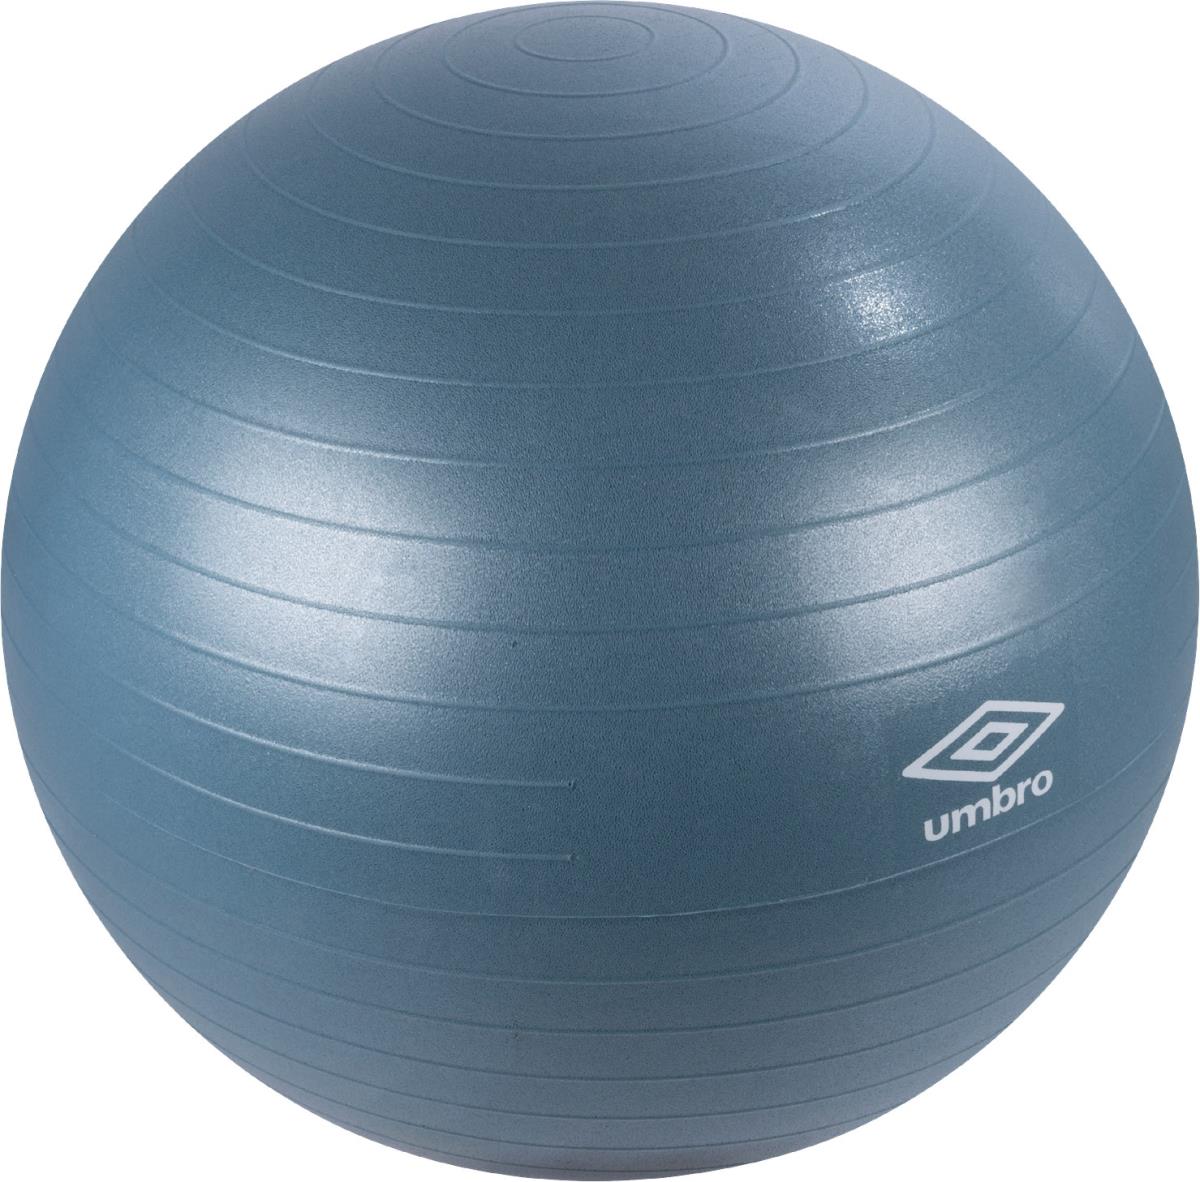 Umbro: Pilatesboll Blå 65cm